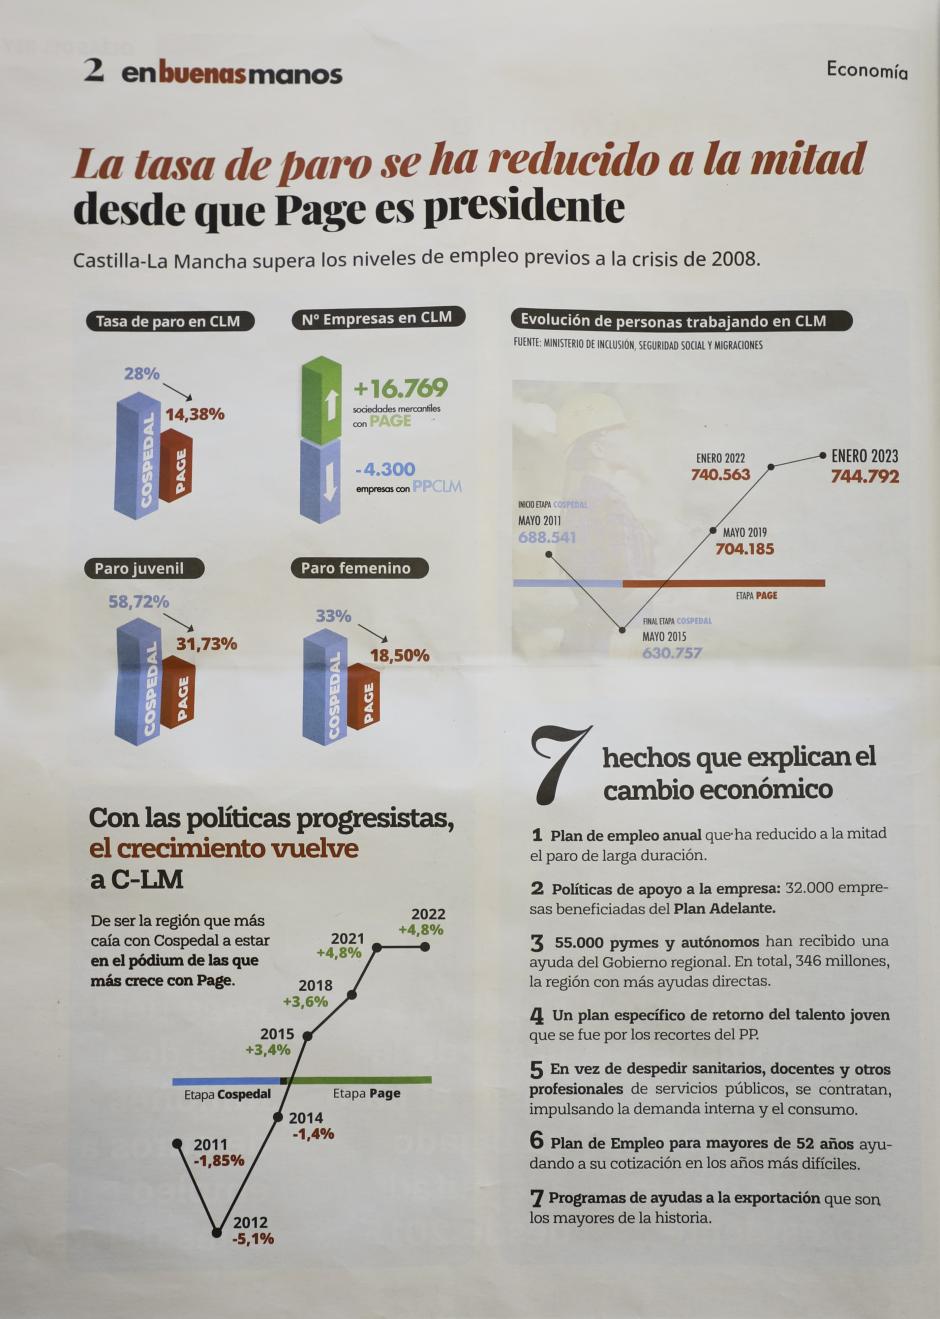 Una de las páginas del periódico que Page está distribuyendo por la región donde no hay rastro del logo del PSOE